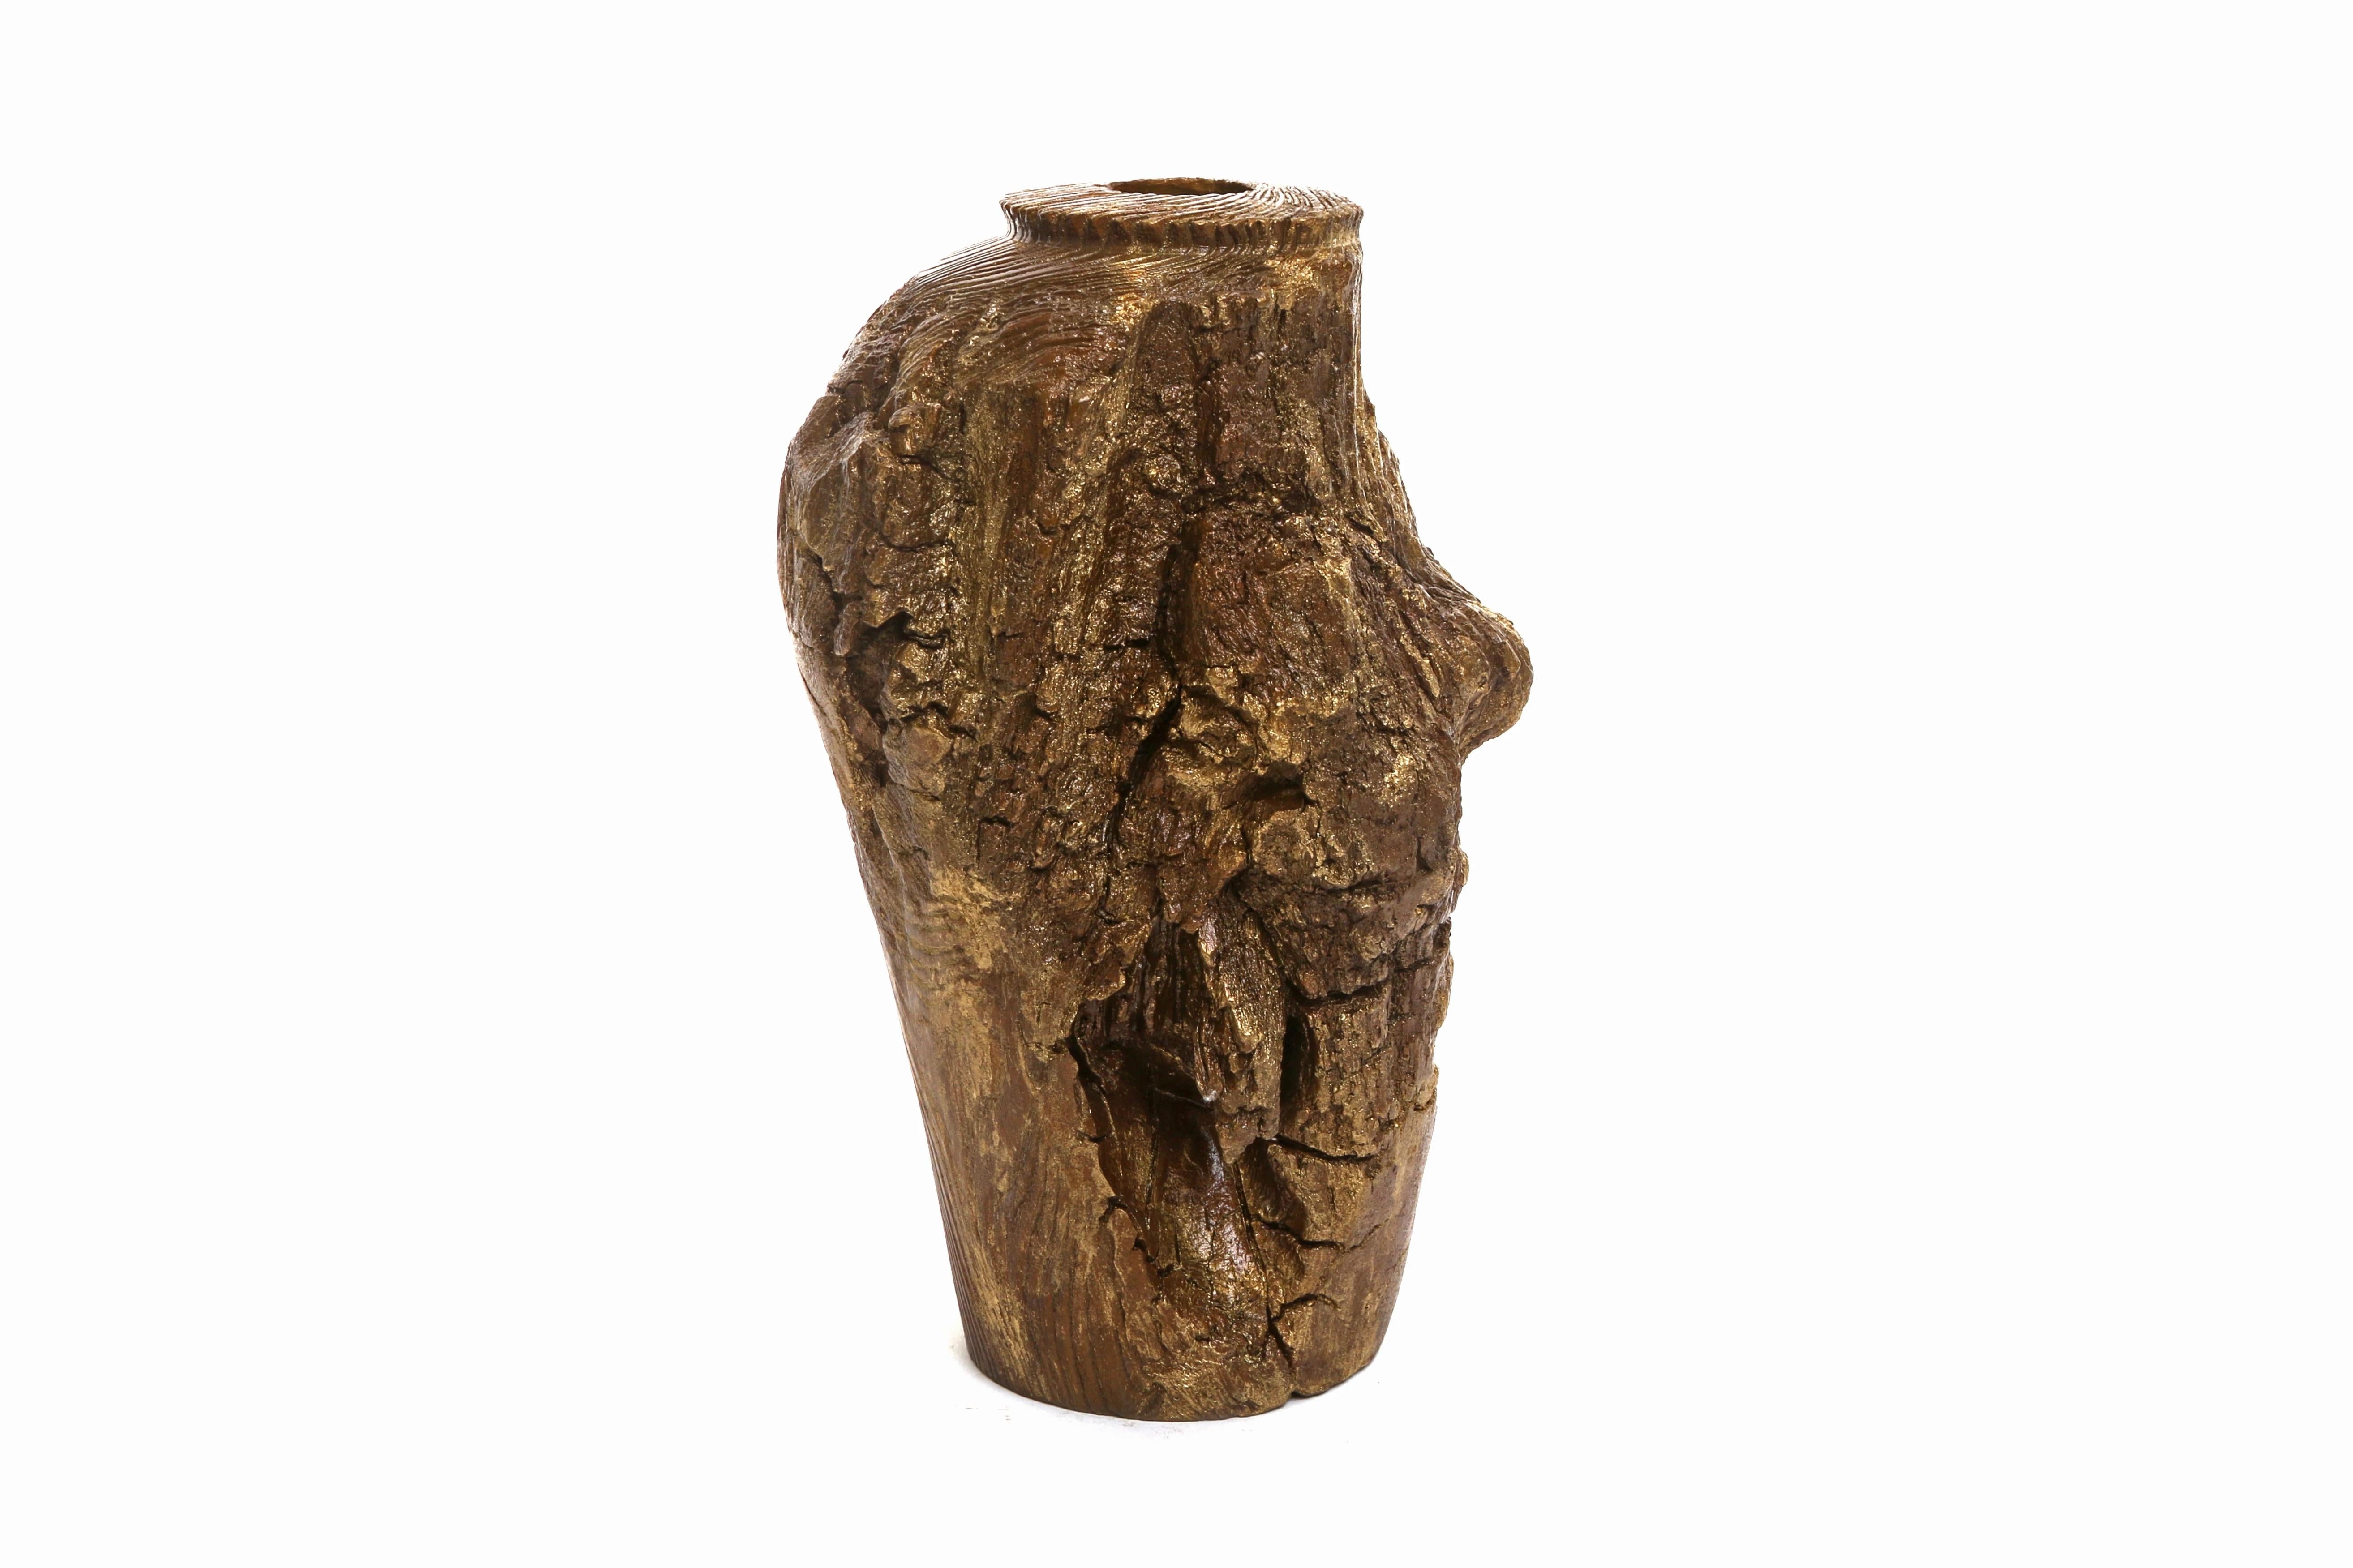 Die aus massiver Bronze gegossene Cliff Vase ist ein funktionelles und skulpturales Werk mit Holz
Detail und Goldpatina.

Inspiriert von den in der Natur vorkommenden Silhouetten, wollte CHAABAN eine Serie einzigartiger Bronzewaren und hochwertiger